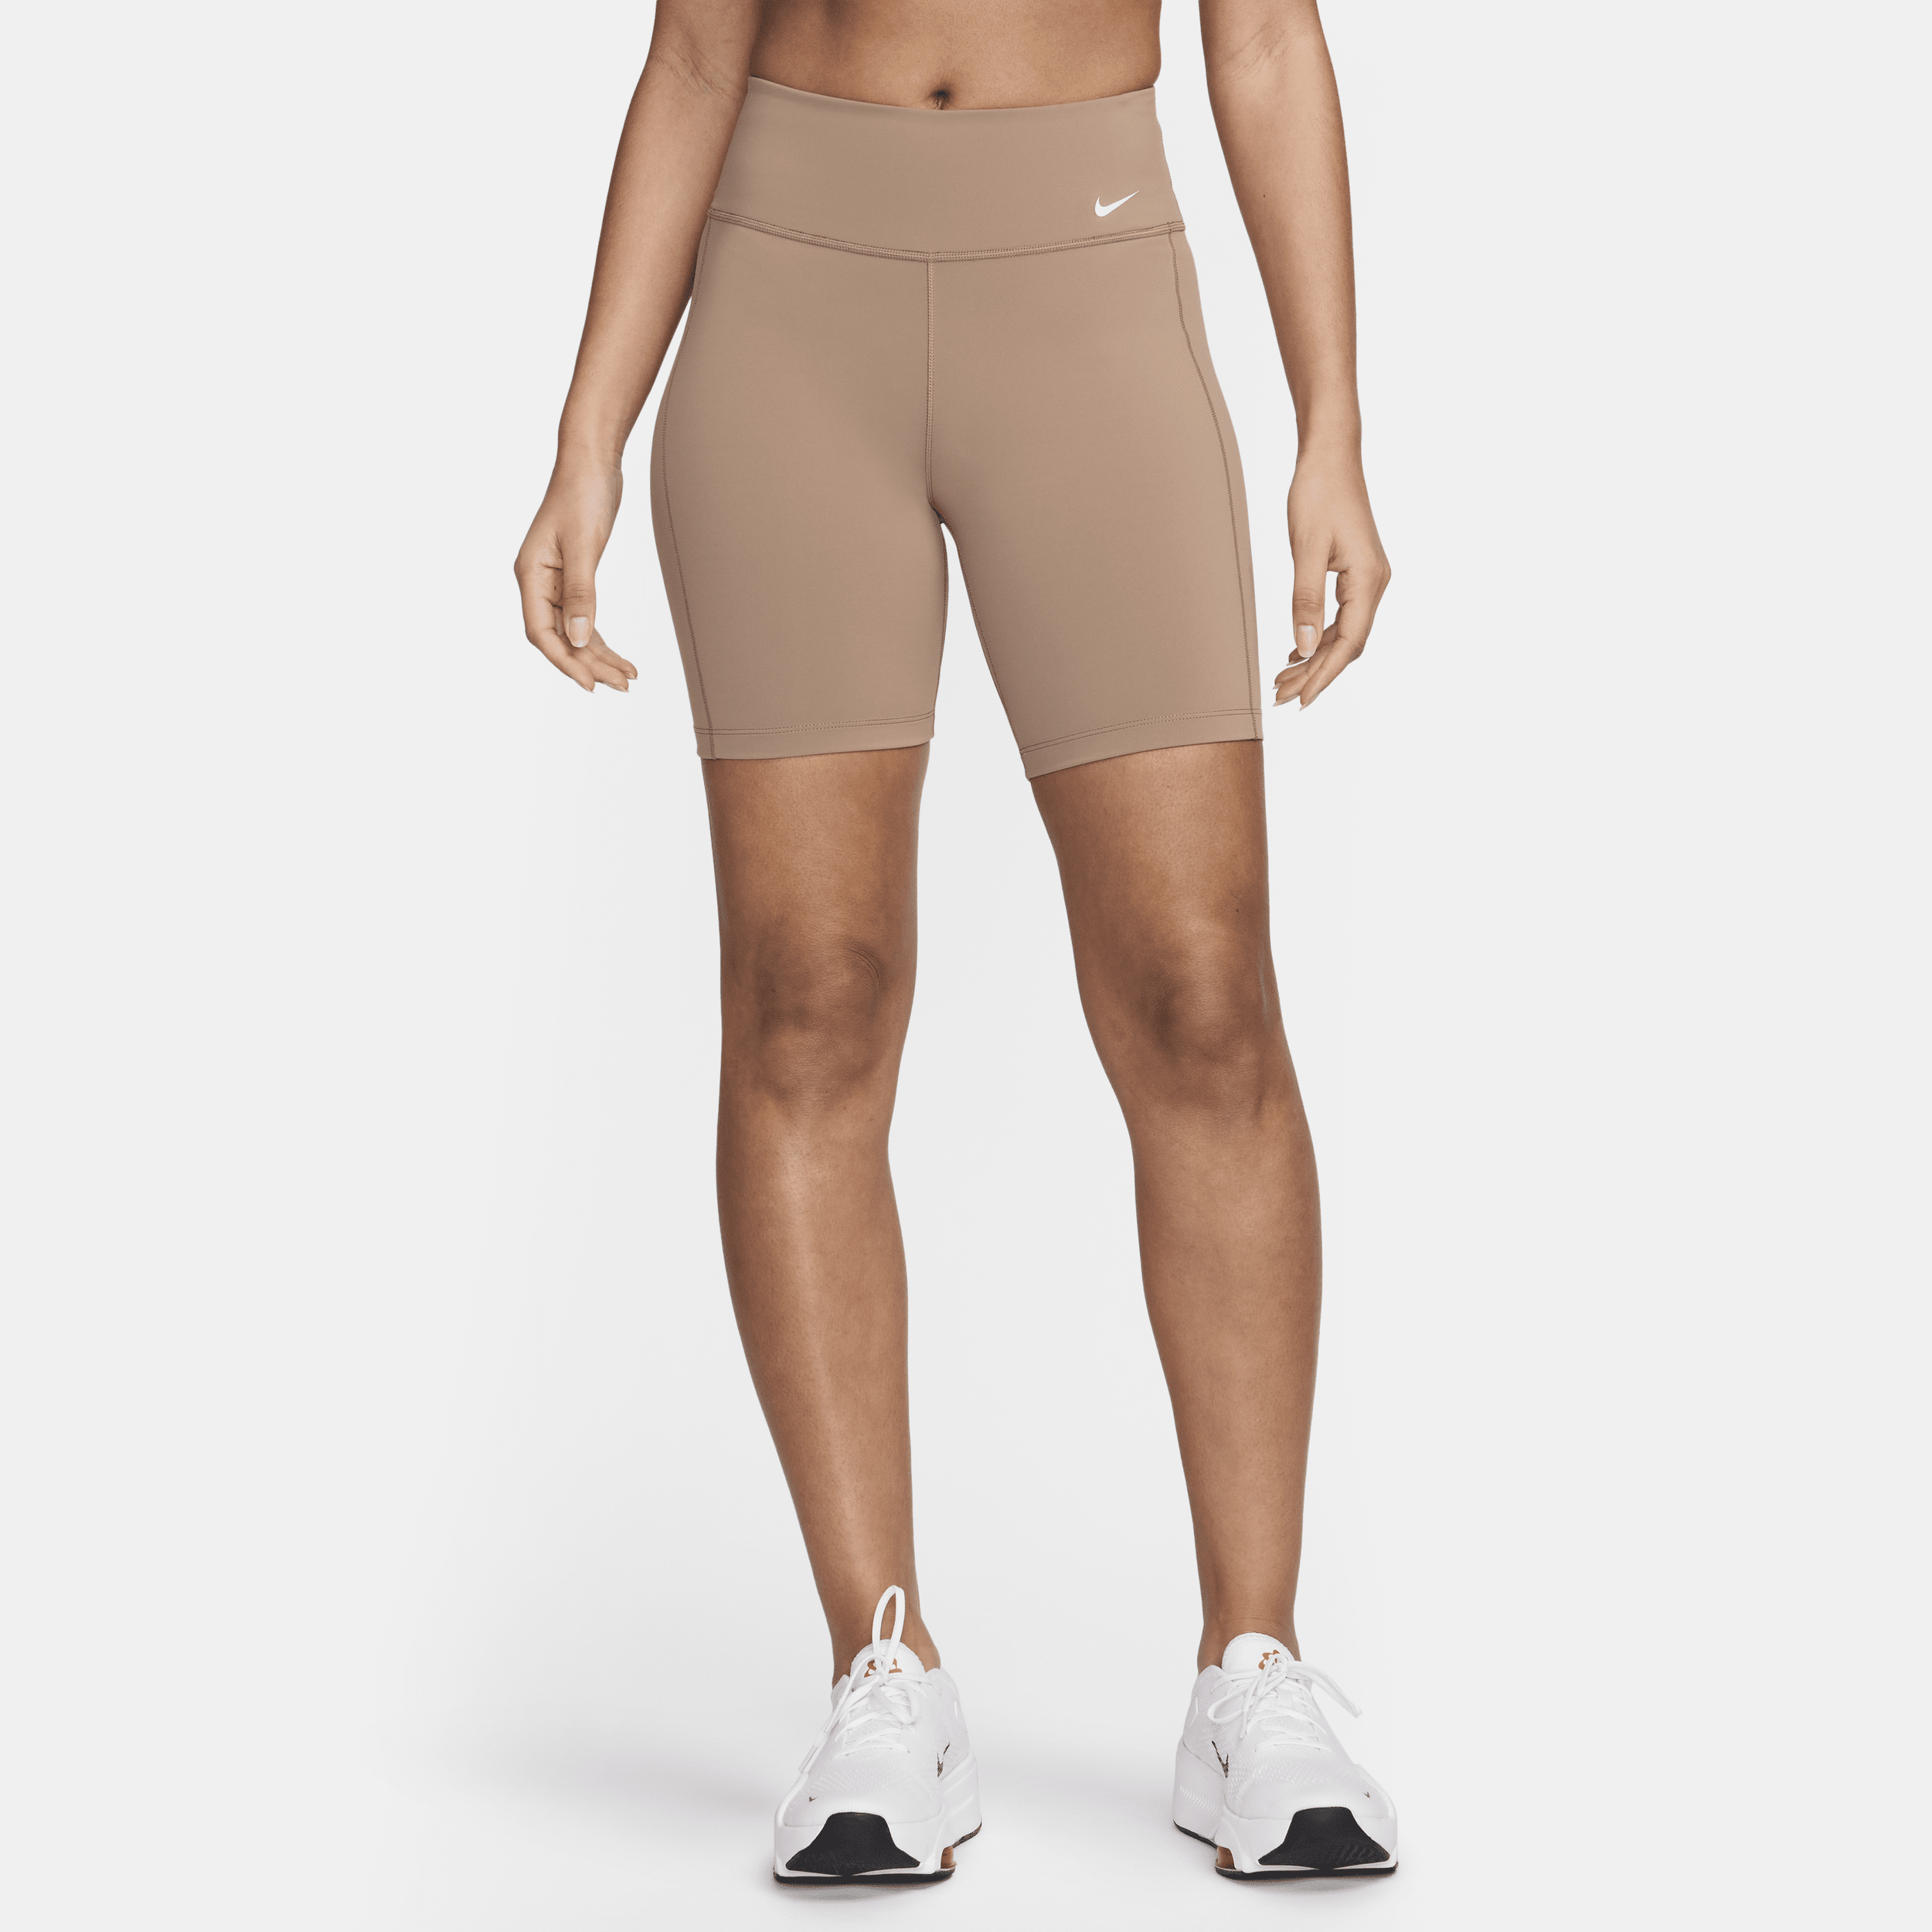 Nike One Leak Protection: Period Mallas cortas de talle medio de 18 cm - Mujer - Marrón